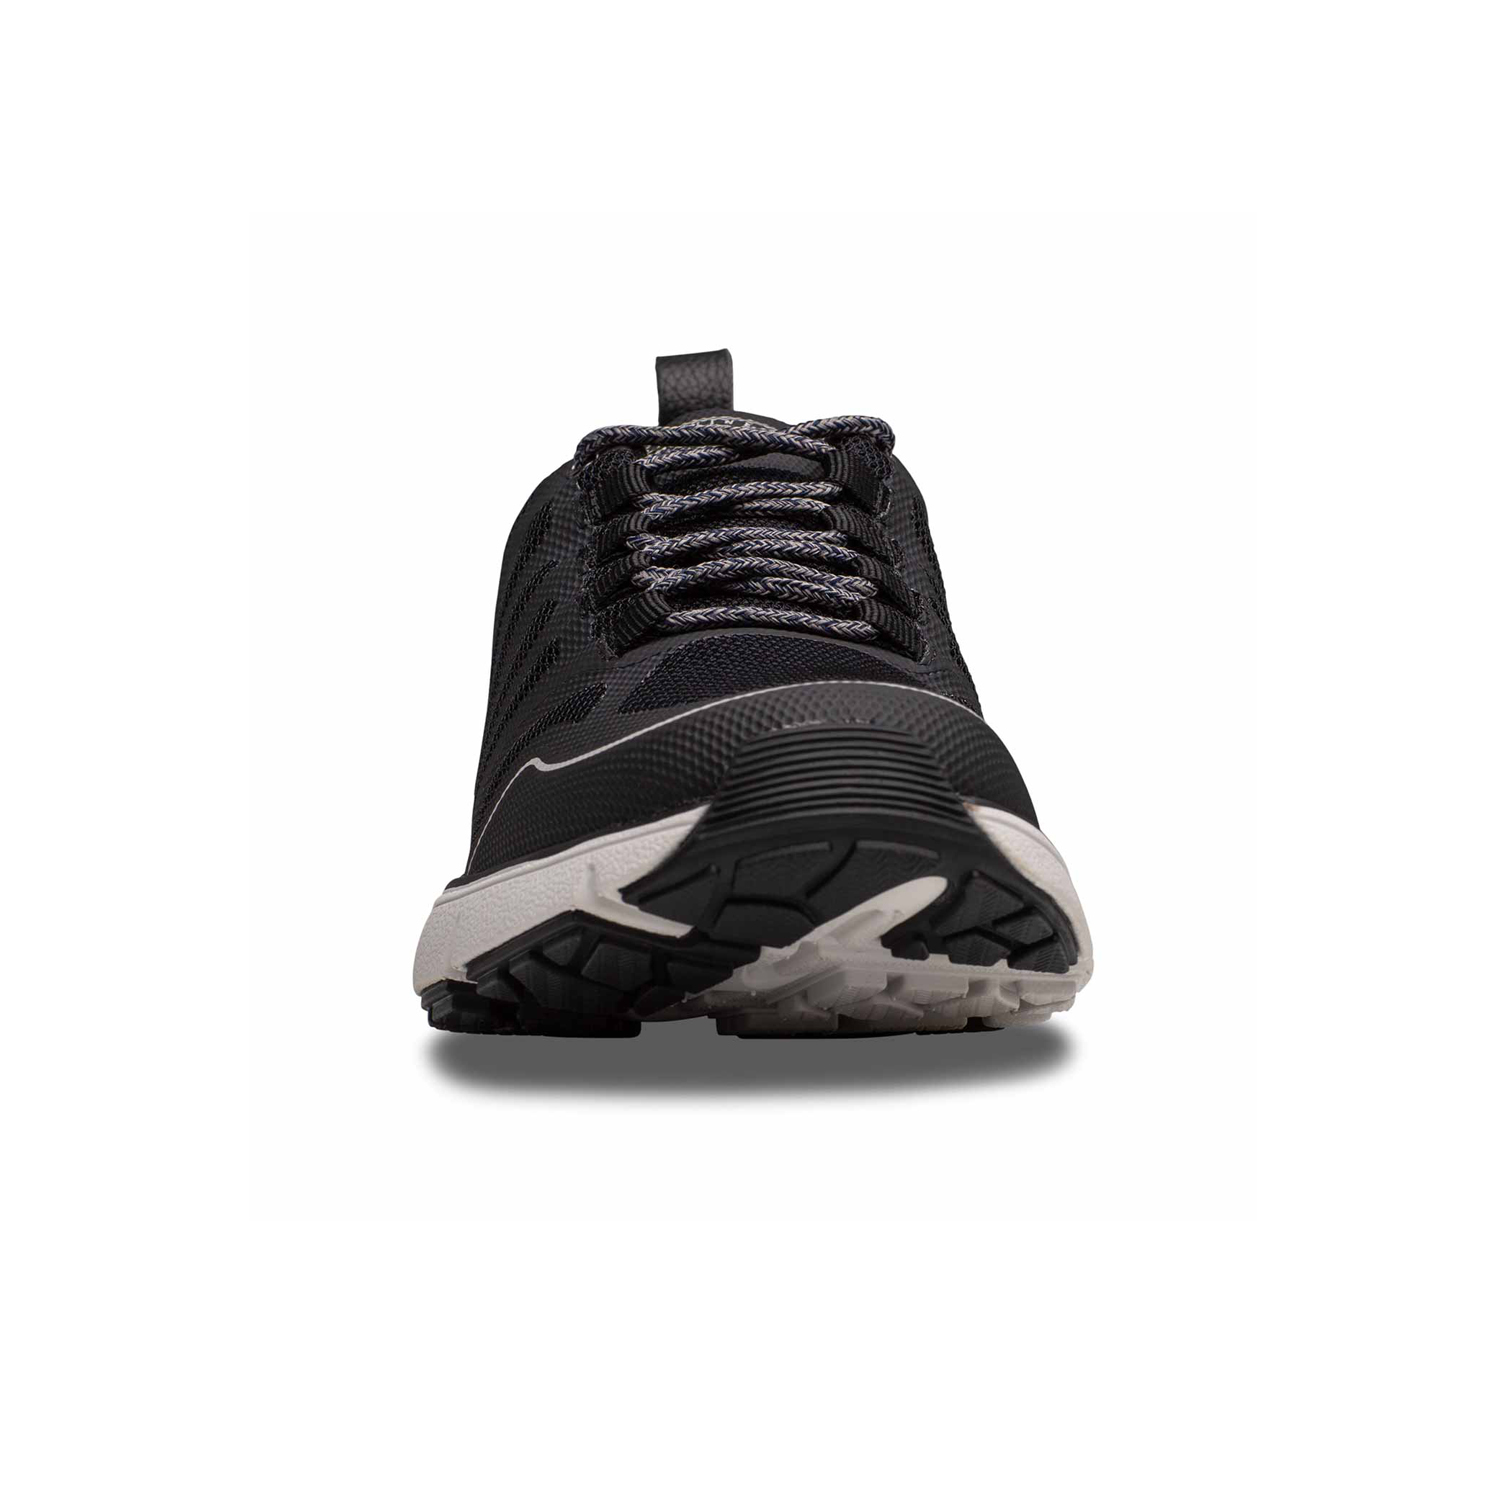 Zusatzbild DR. COMFORT® Gordon schwarz, vorne, Orthopädische Schuhe, Leichter Aktivschuh mit stabilisierender und dämpfender Laufsohlenkonstruktion für einen sicheren Gang